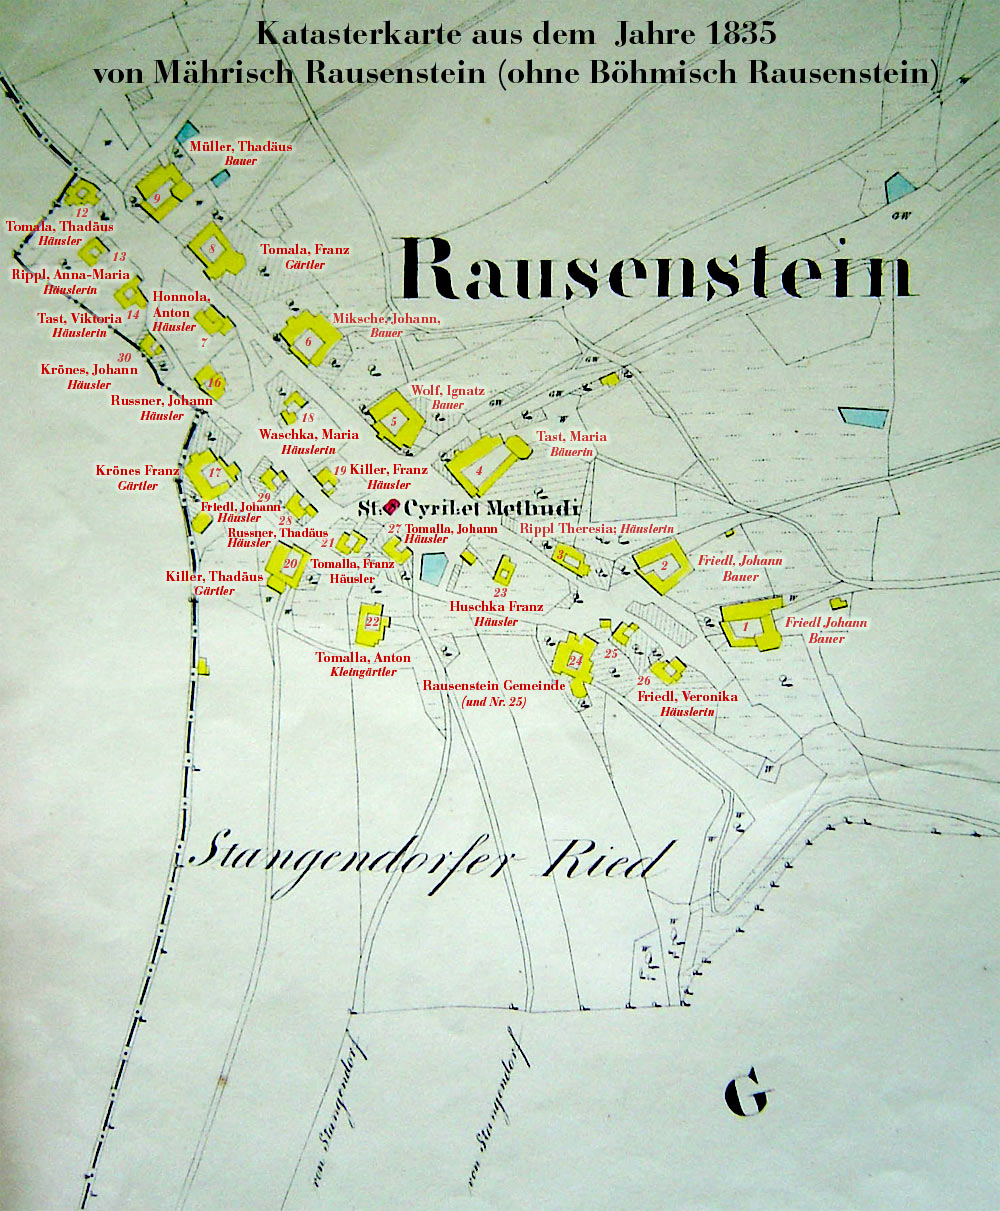 Katasterkarte von Rausenstein 1835